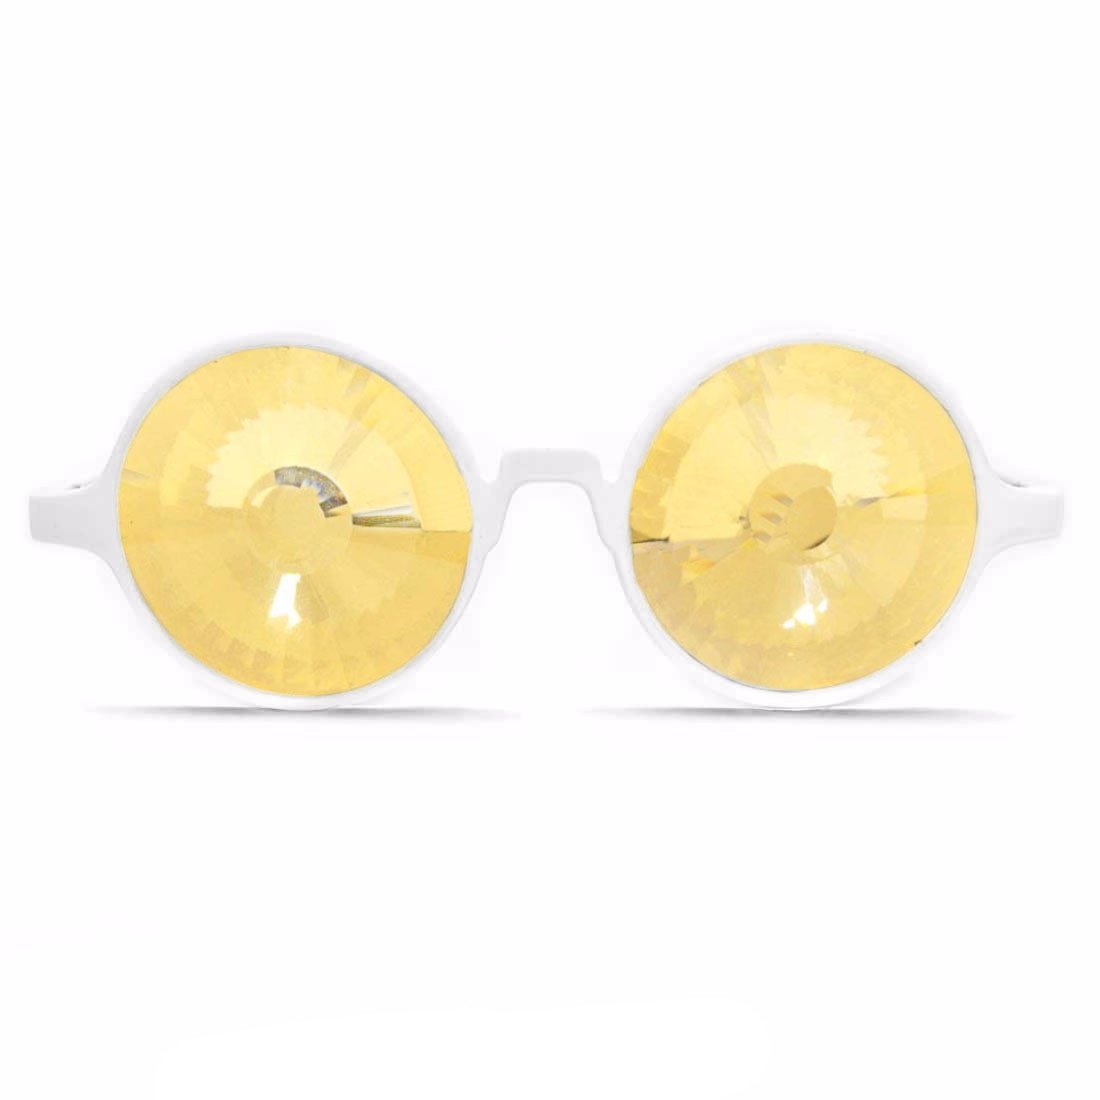 White Kaleidoscope Glasses - Gold Wormhole, GloFX, | iEDM